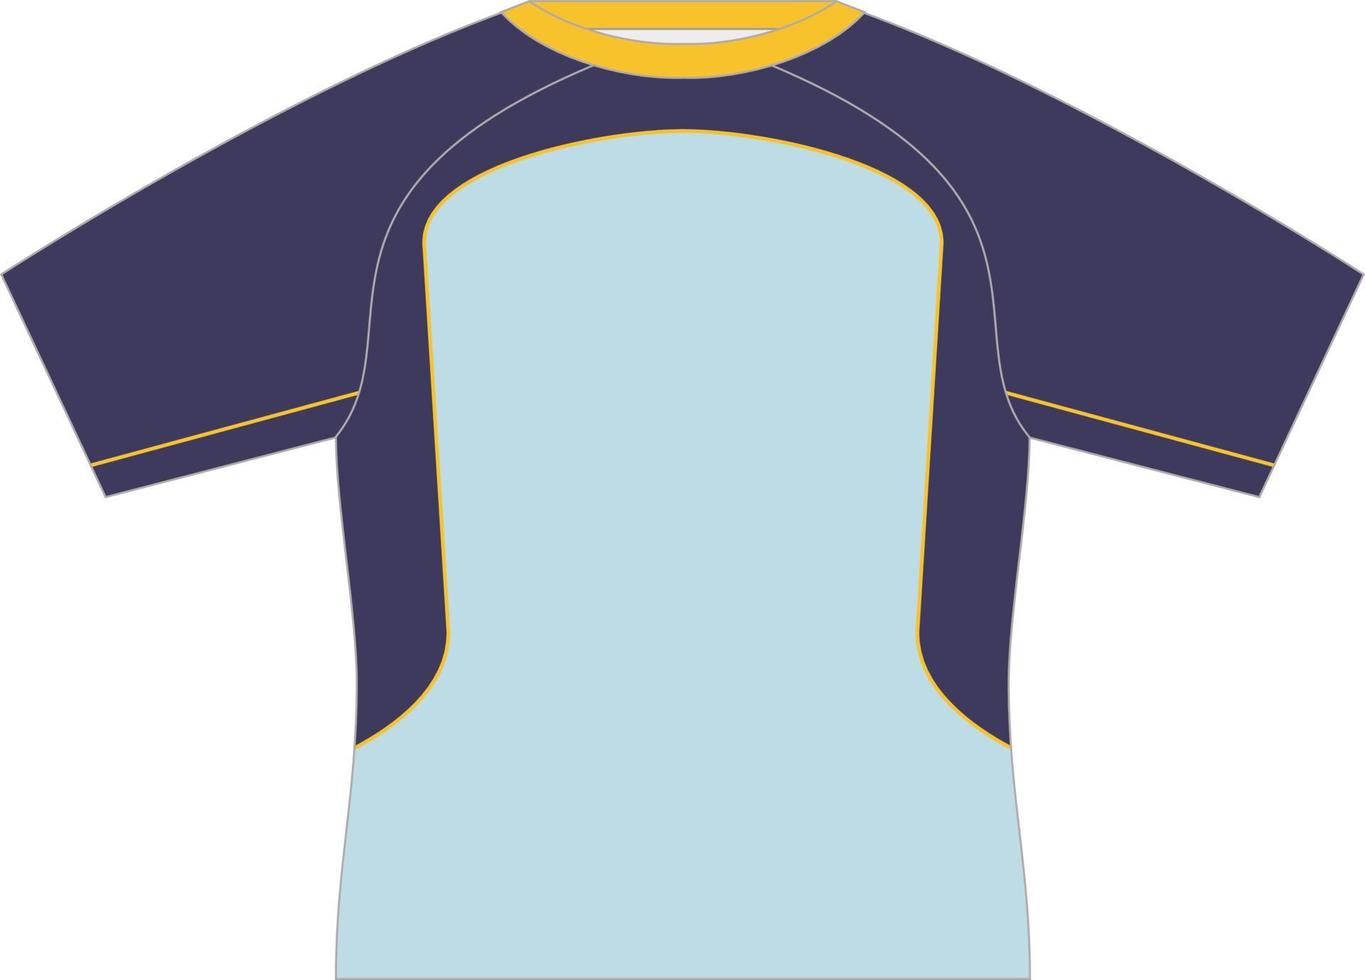 T-Shirt-Sportdesign-Vorlage für Fußballtrikot. Sportuniform in Vorderansicht. T-Shirt-Modell für Sportverein. Vektor-Illustration vektor